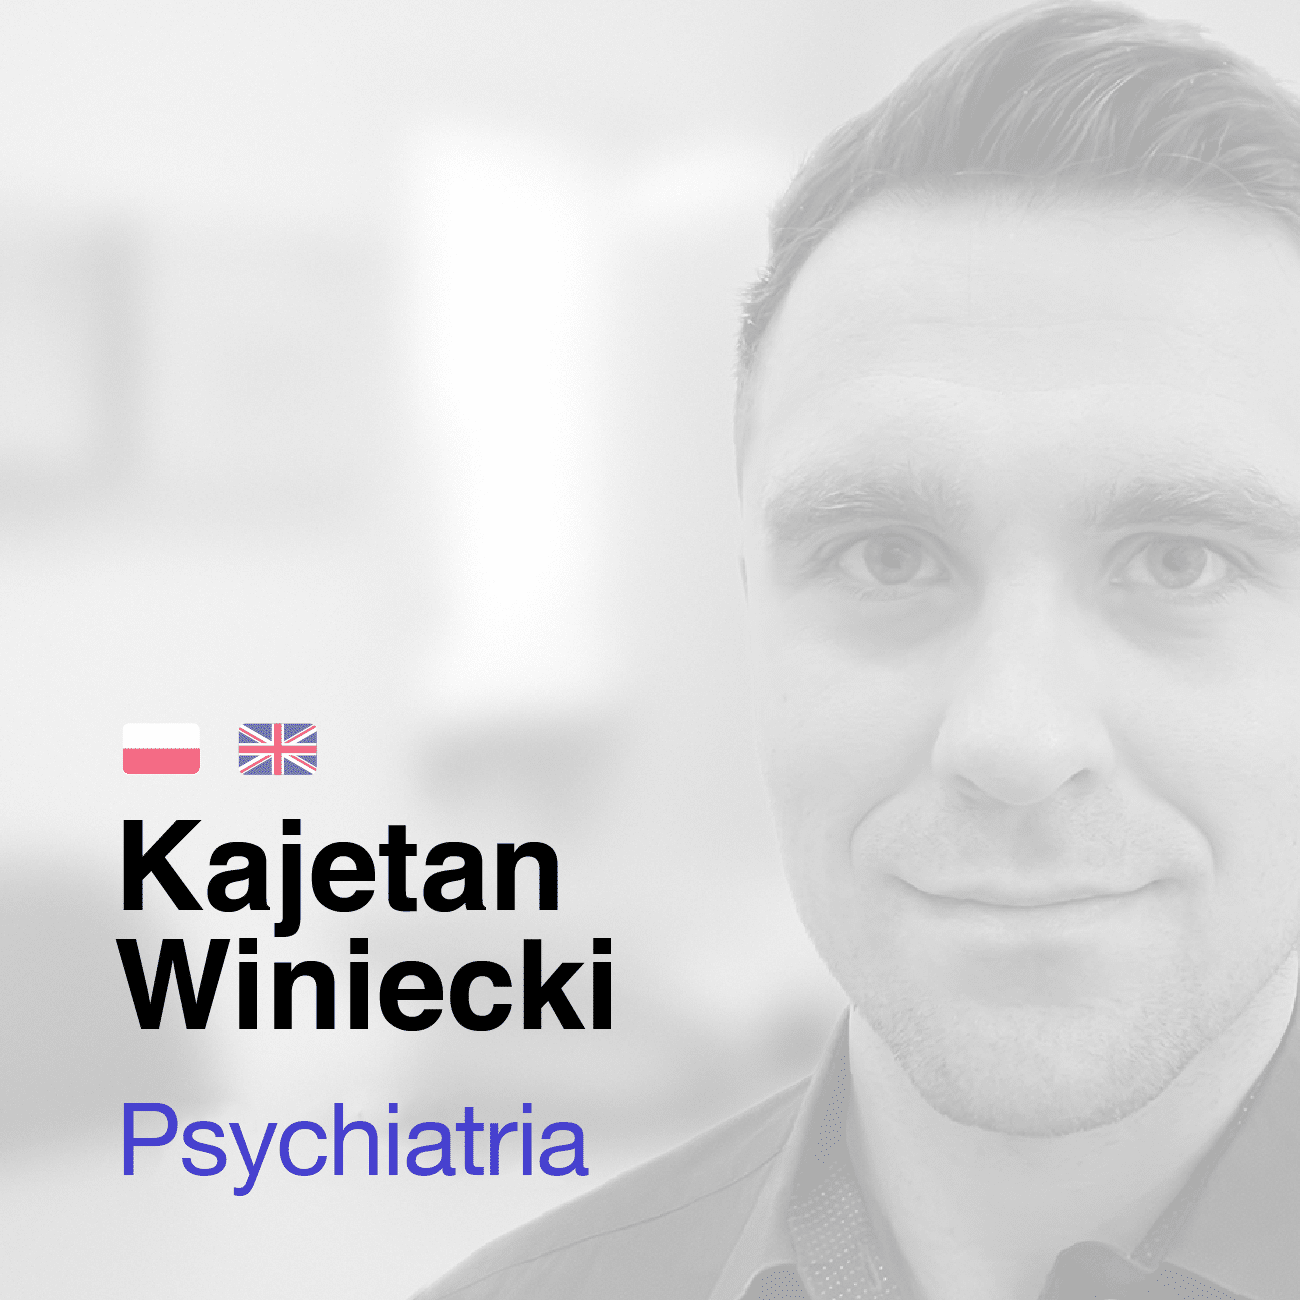 Kajetan Winiecki Psychiatra medicana.pl Centrum Terapii Medyczna Marihuana